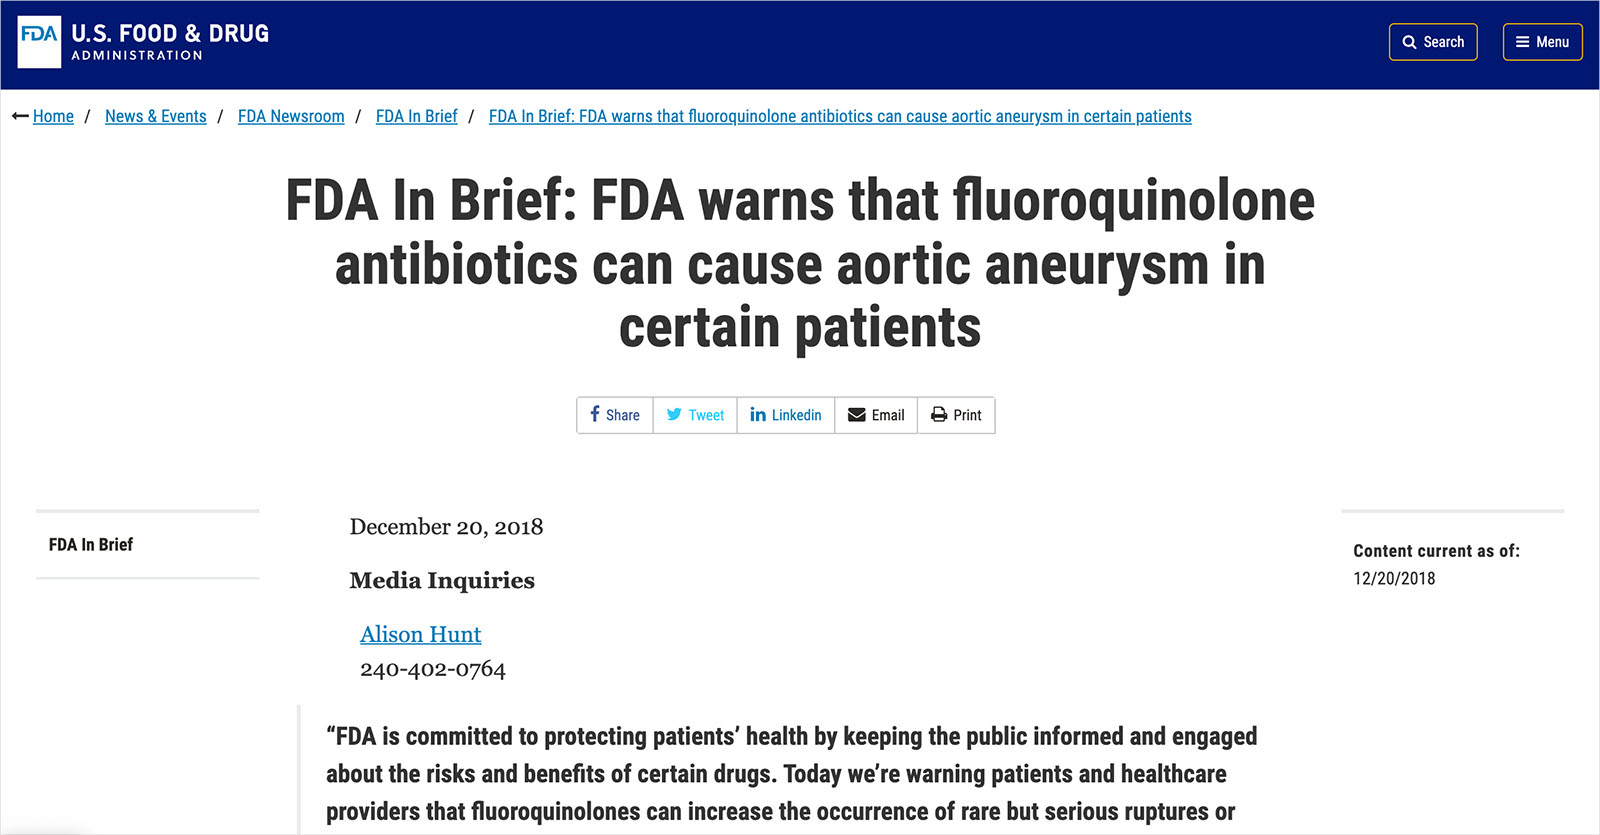 氟喹諾酮-Fluoroquinolone-抗生素-FDA-主動脈剝離-使用風險-智慧醫療-數據醫療